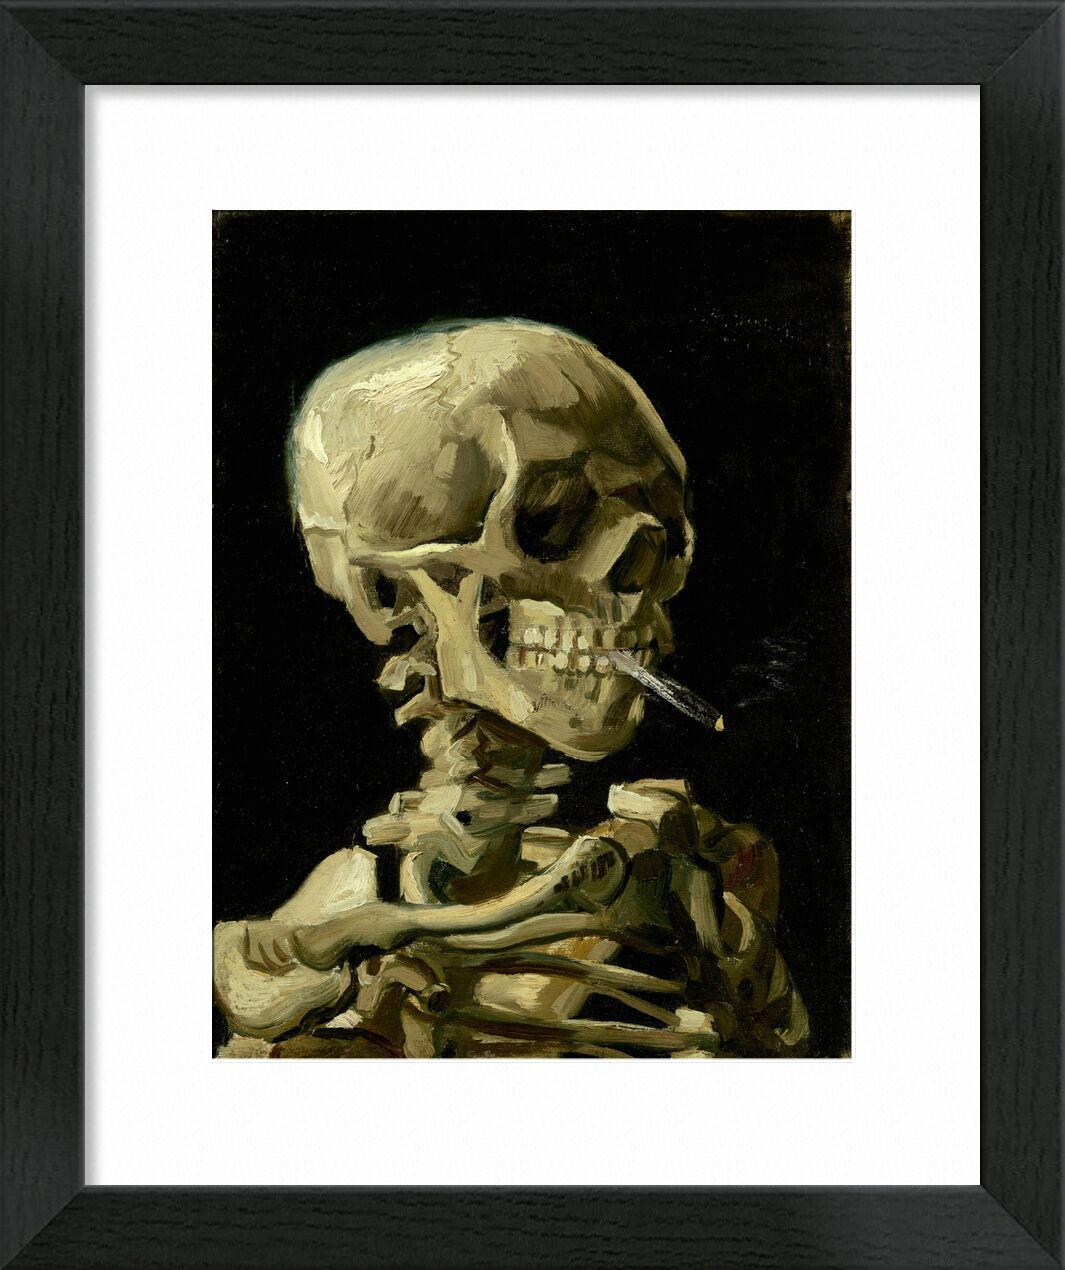 Head of a Skeleton with a Burning Cigarette - VINCENT VAN GOGH von Bildende Kunst, Prodi Art, dunkel, VINCENT VAN GOGH, Eingeweide, Skelett, Zigarette, Tod, Rauch, Rauch, schwarz